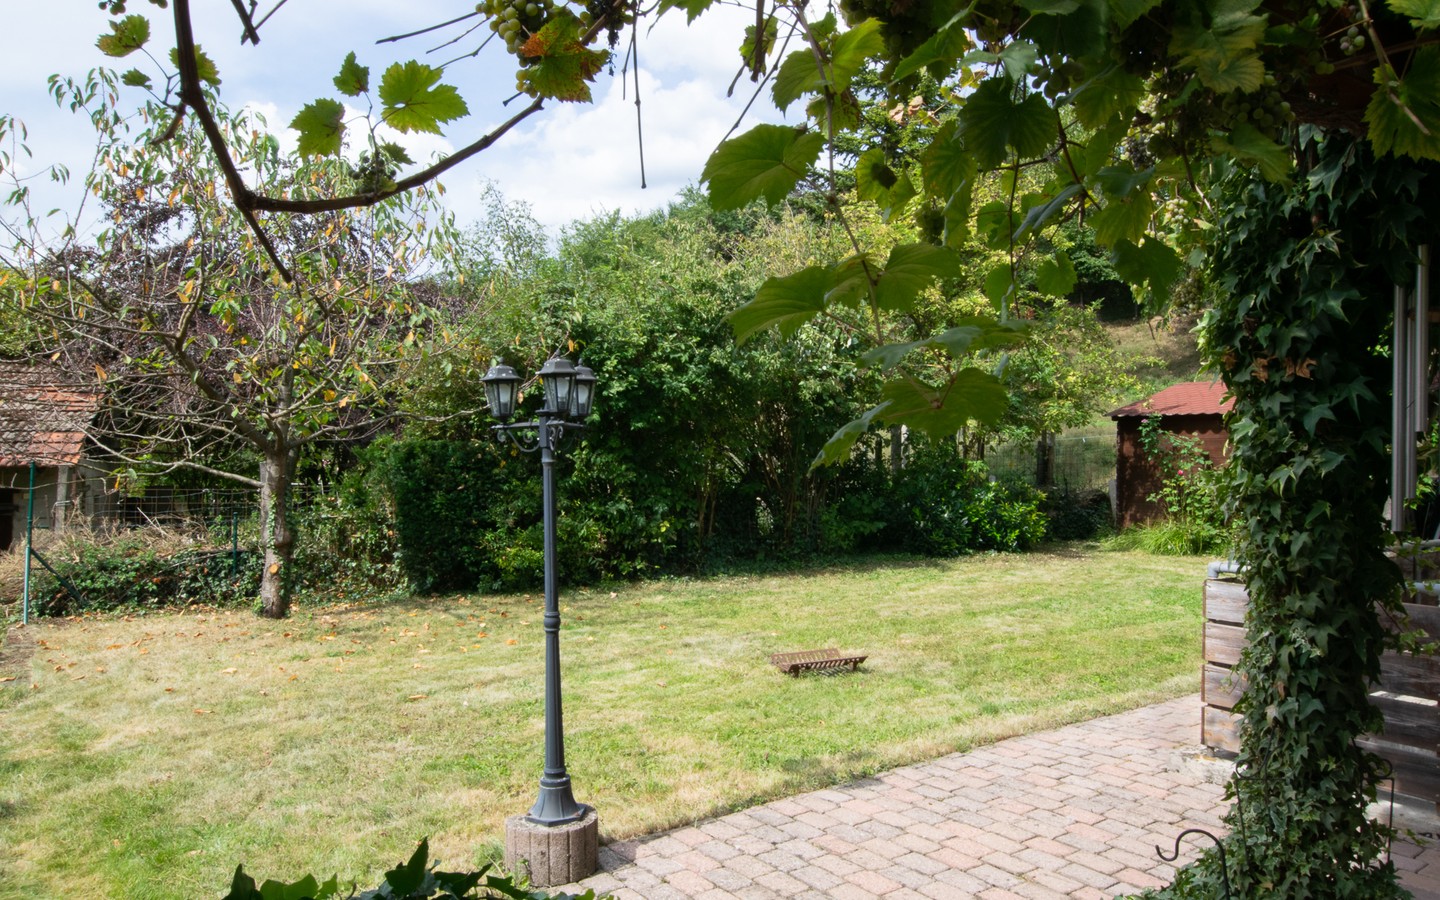 Garten - Platz für die ganze Familie! Großzügiges Wohnhaus mit Einliegerwohnung und idyllischem Garten